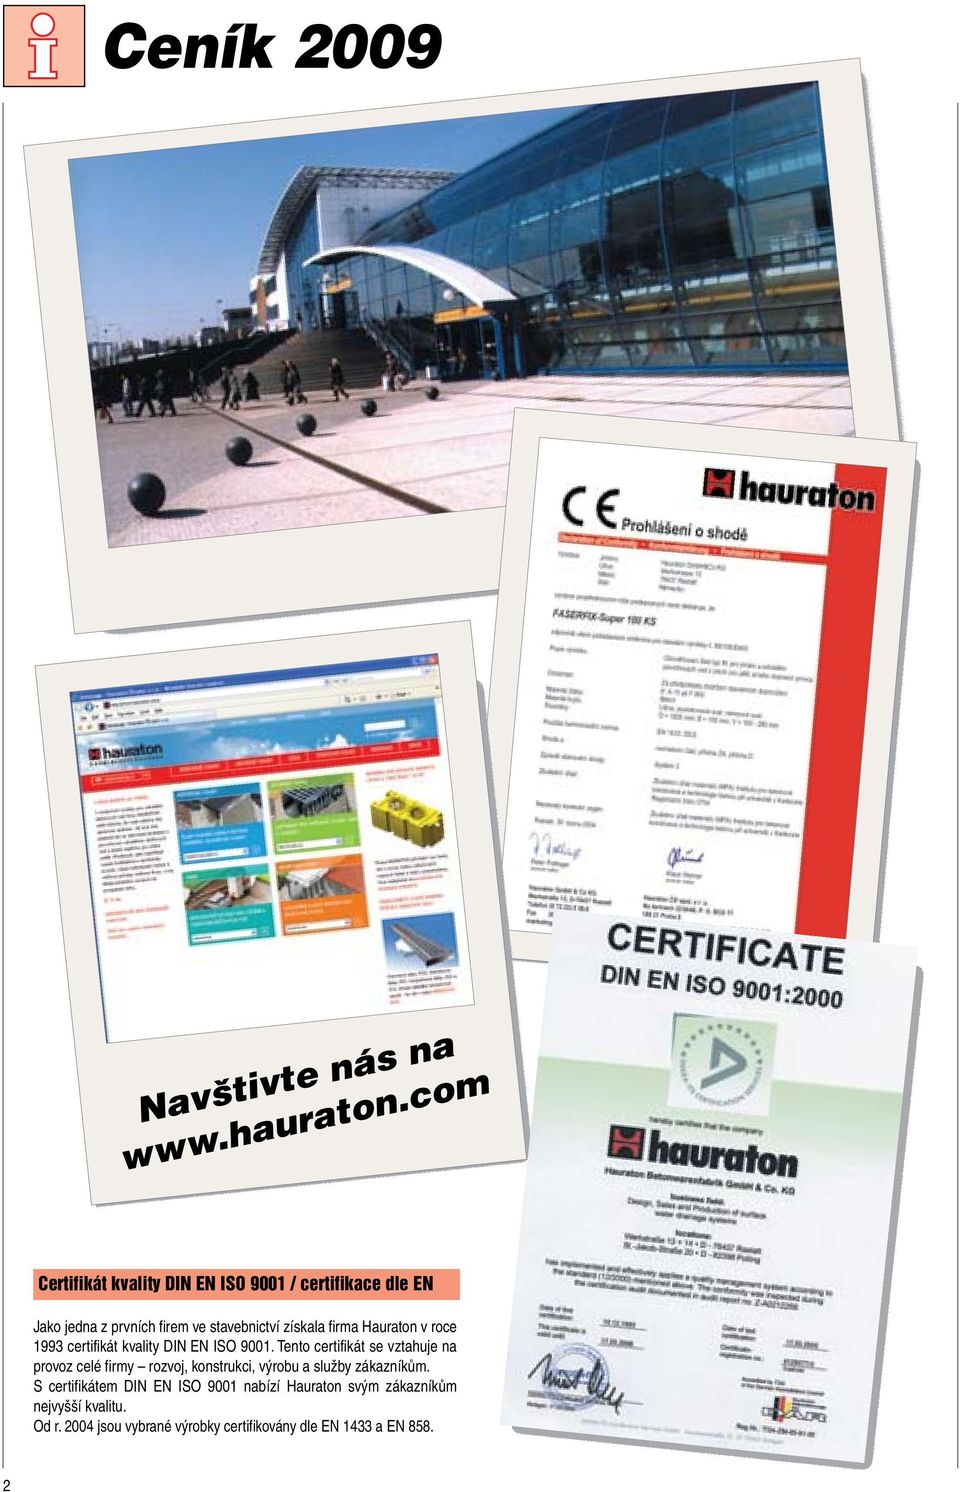 firma Hauraton v roce 1993 certifikát kvality DIN EN ISO 9001.